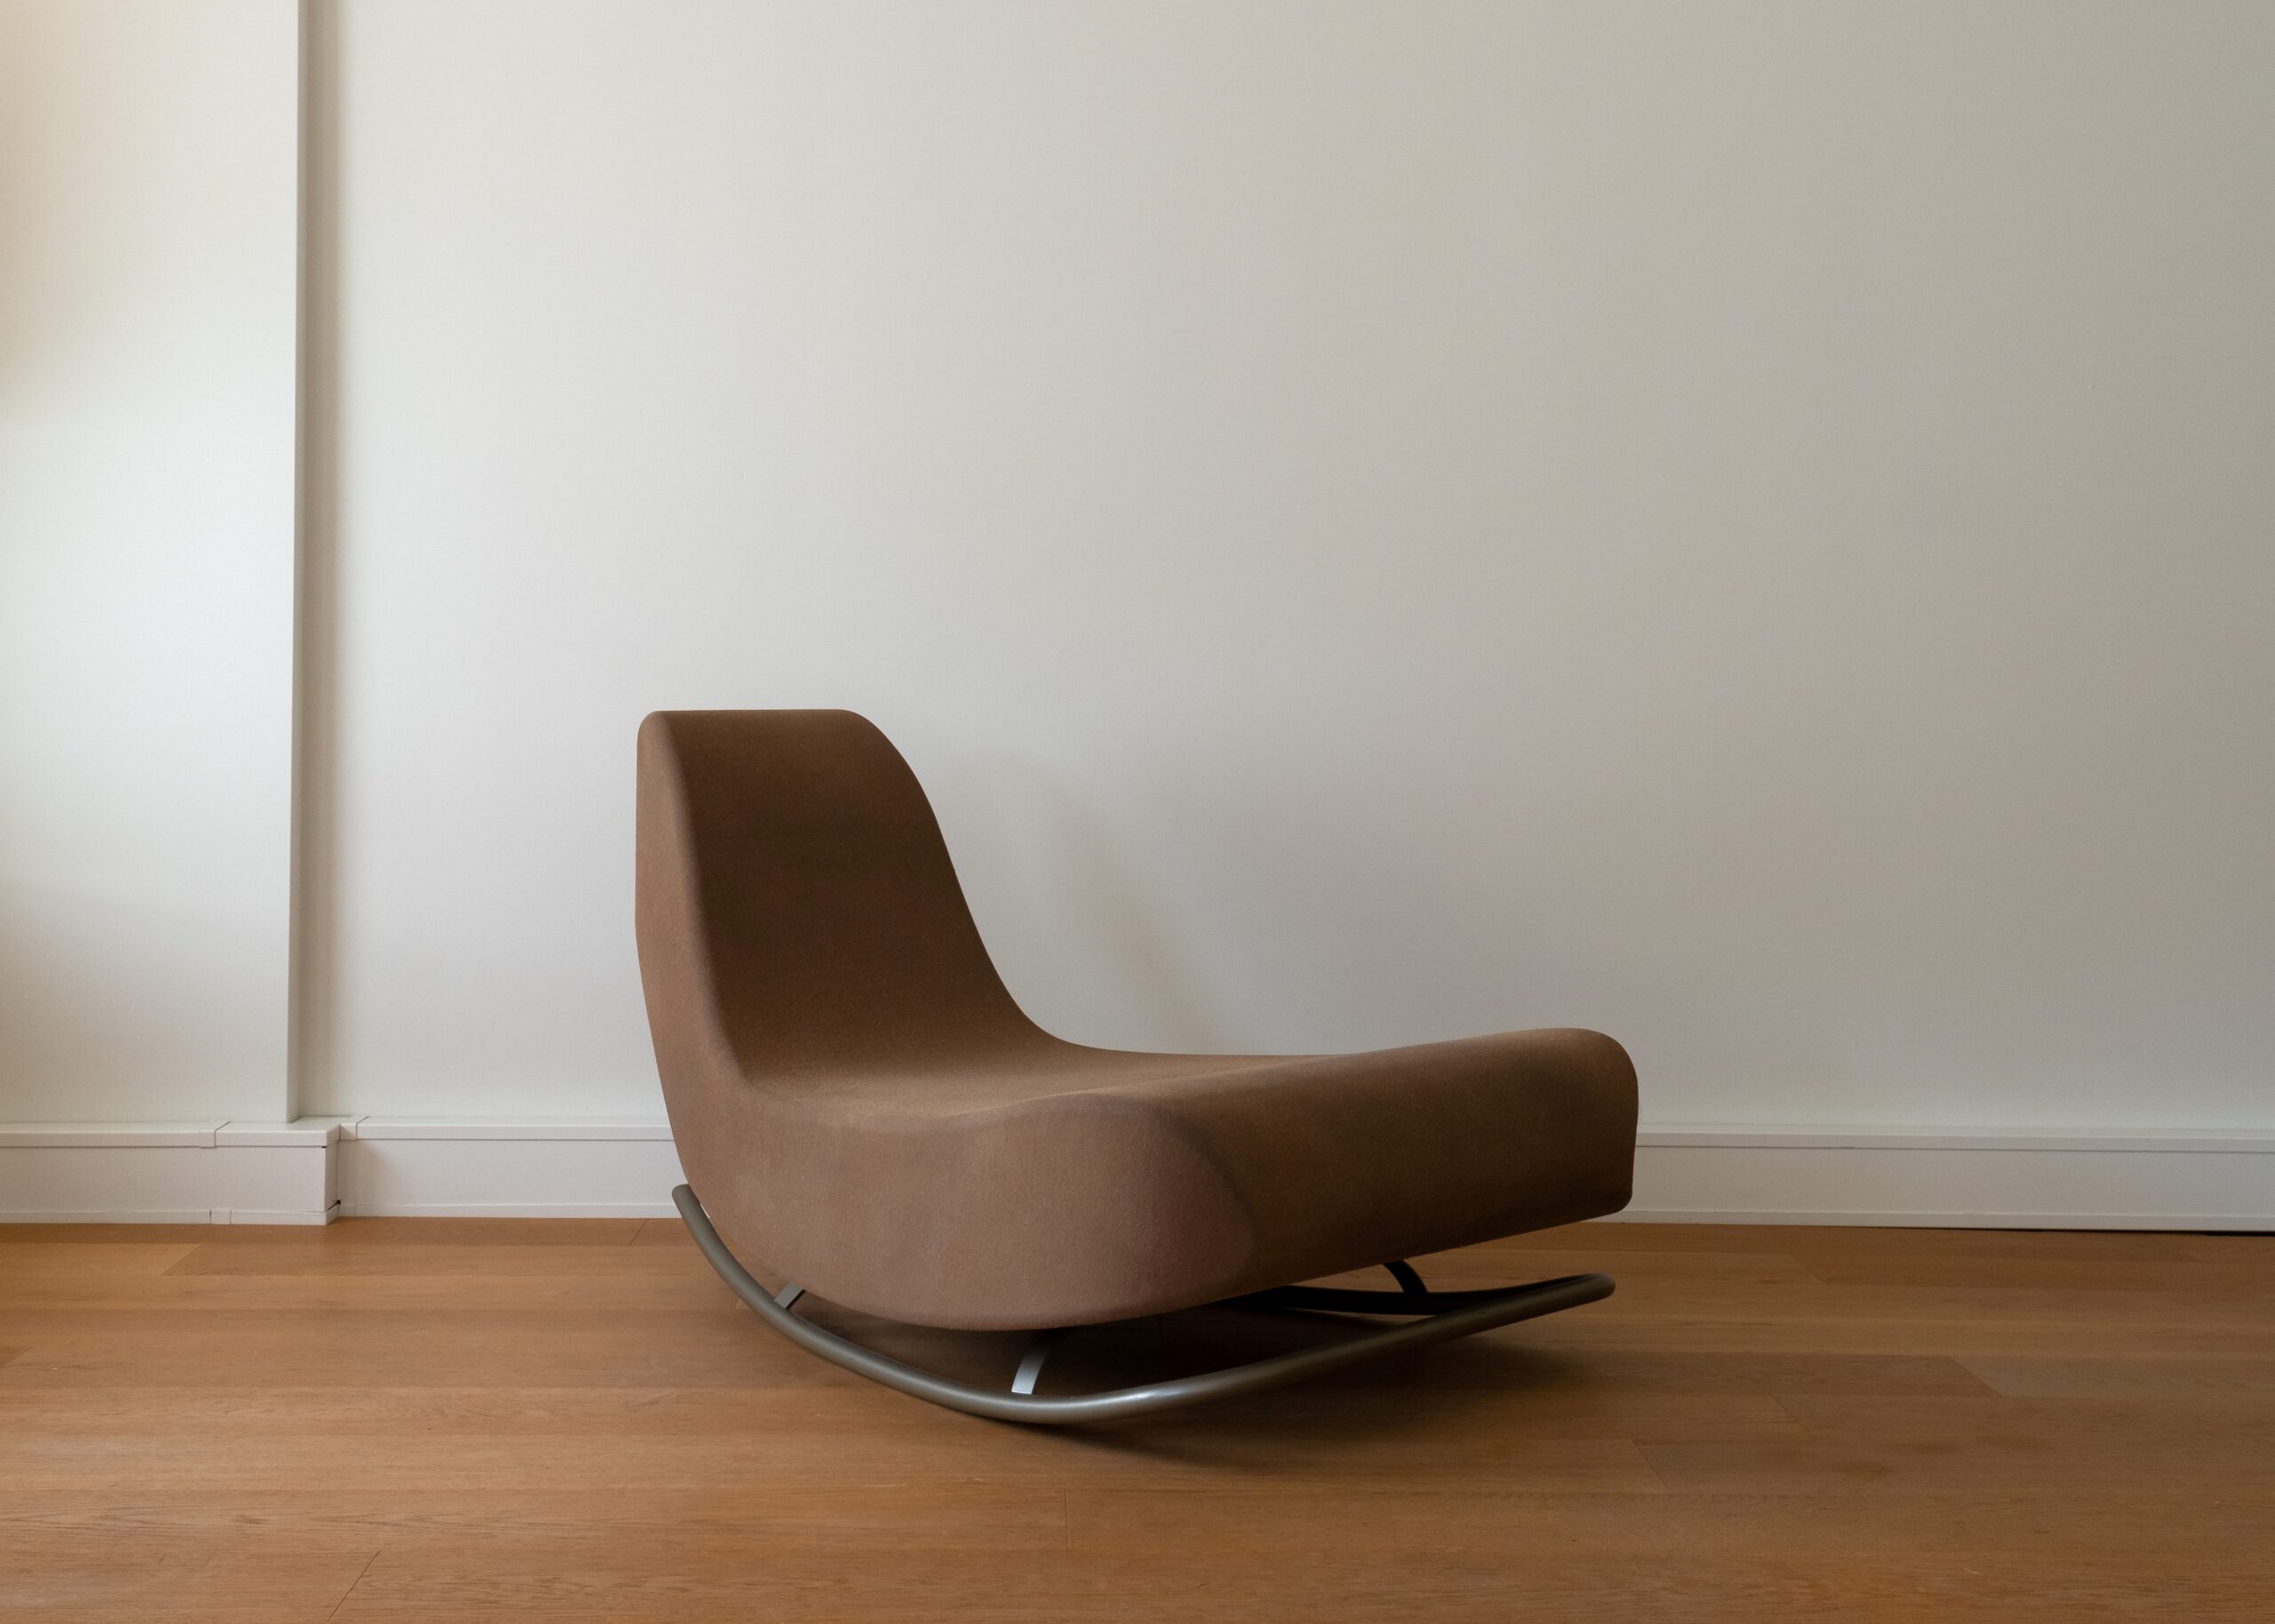 Guinness Noord abstract Duurzame schommelstoel om in weg te dromen | Interior Business